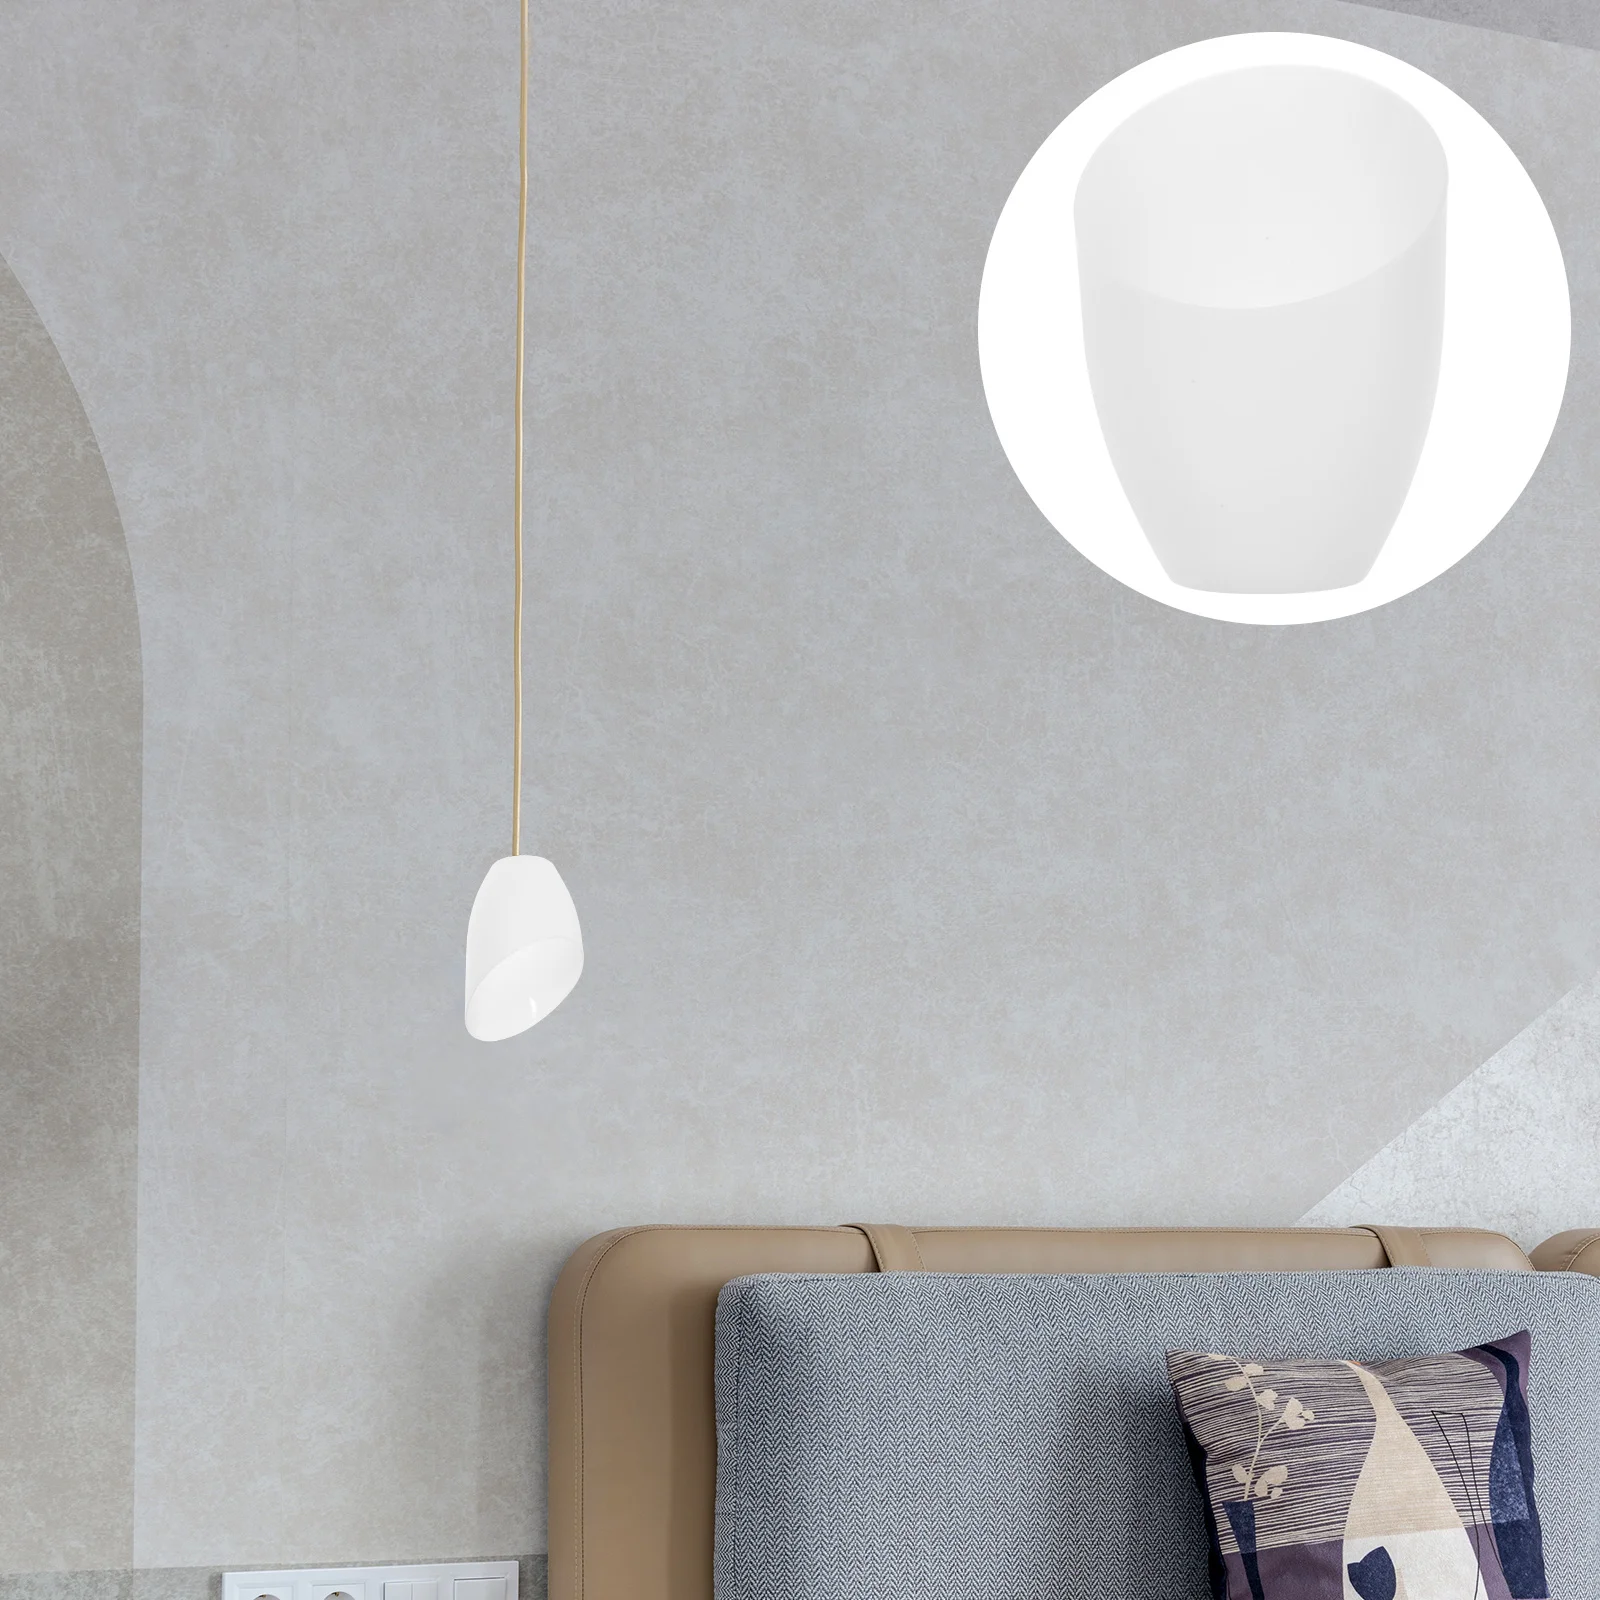 5 шт. белых светодиодных лампочек с абажуром в виде угловой подковы, сменная крышка для стола, шикарный тюльпан